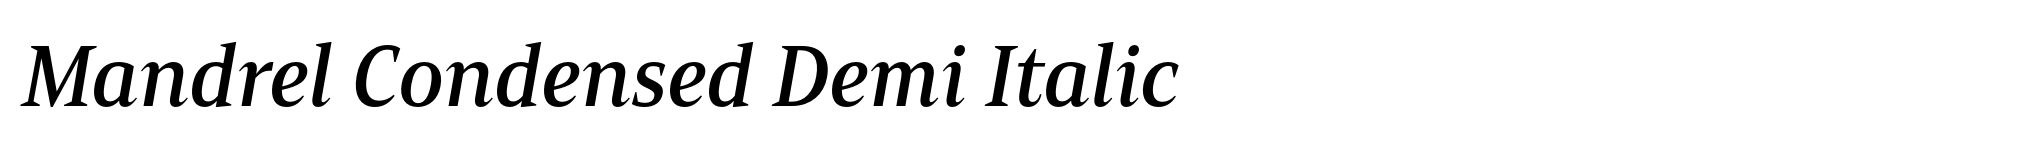 Mandrel Condensed Demi Italic image